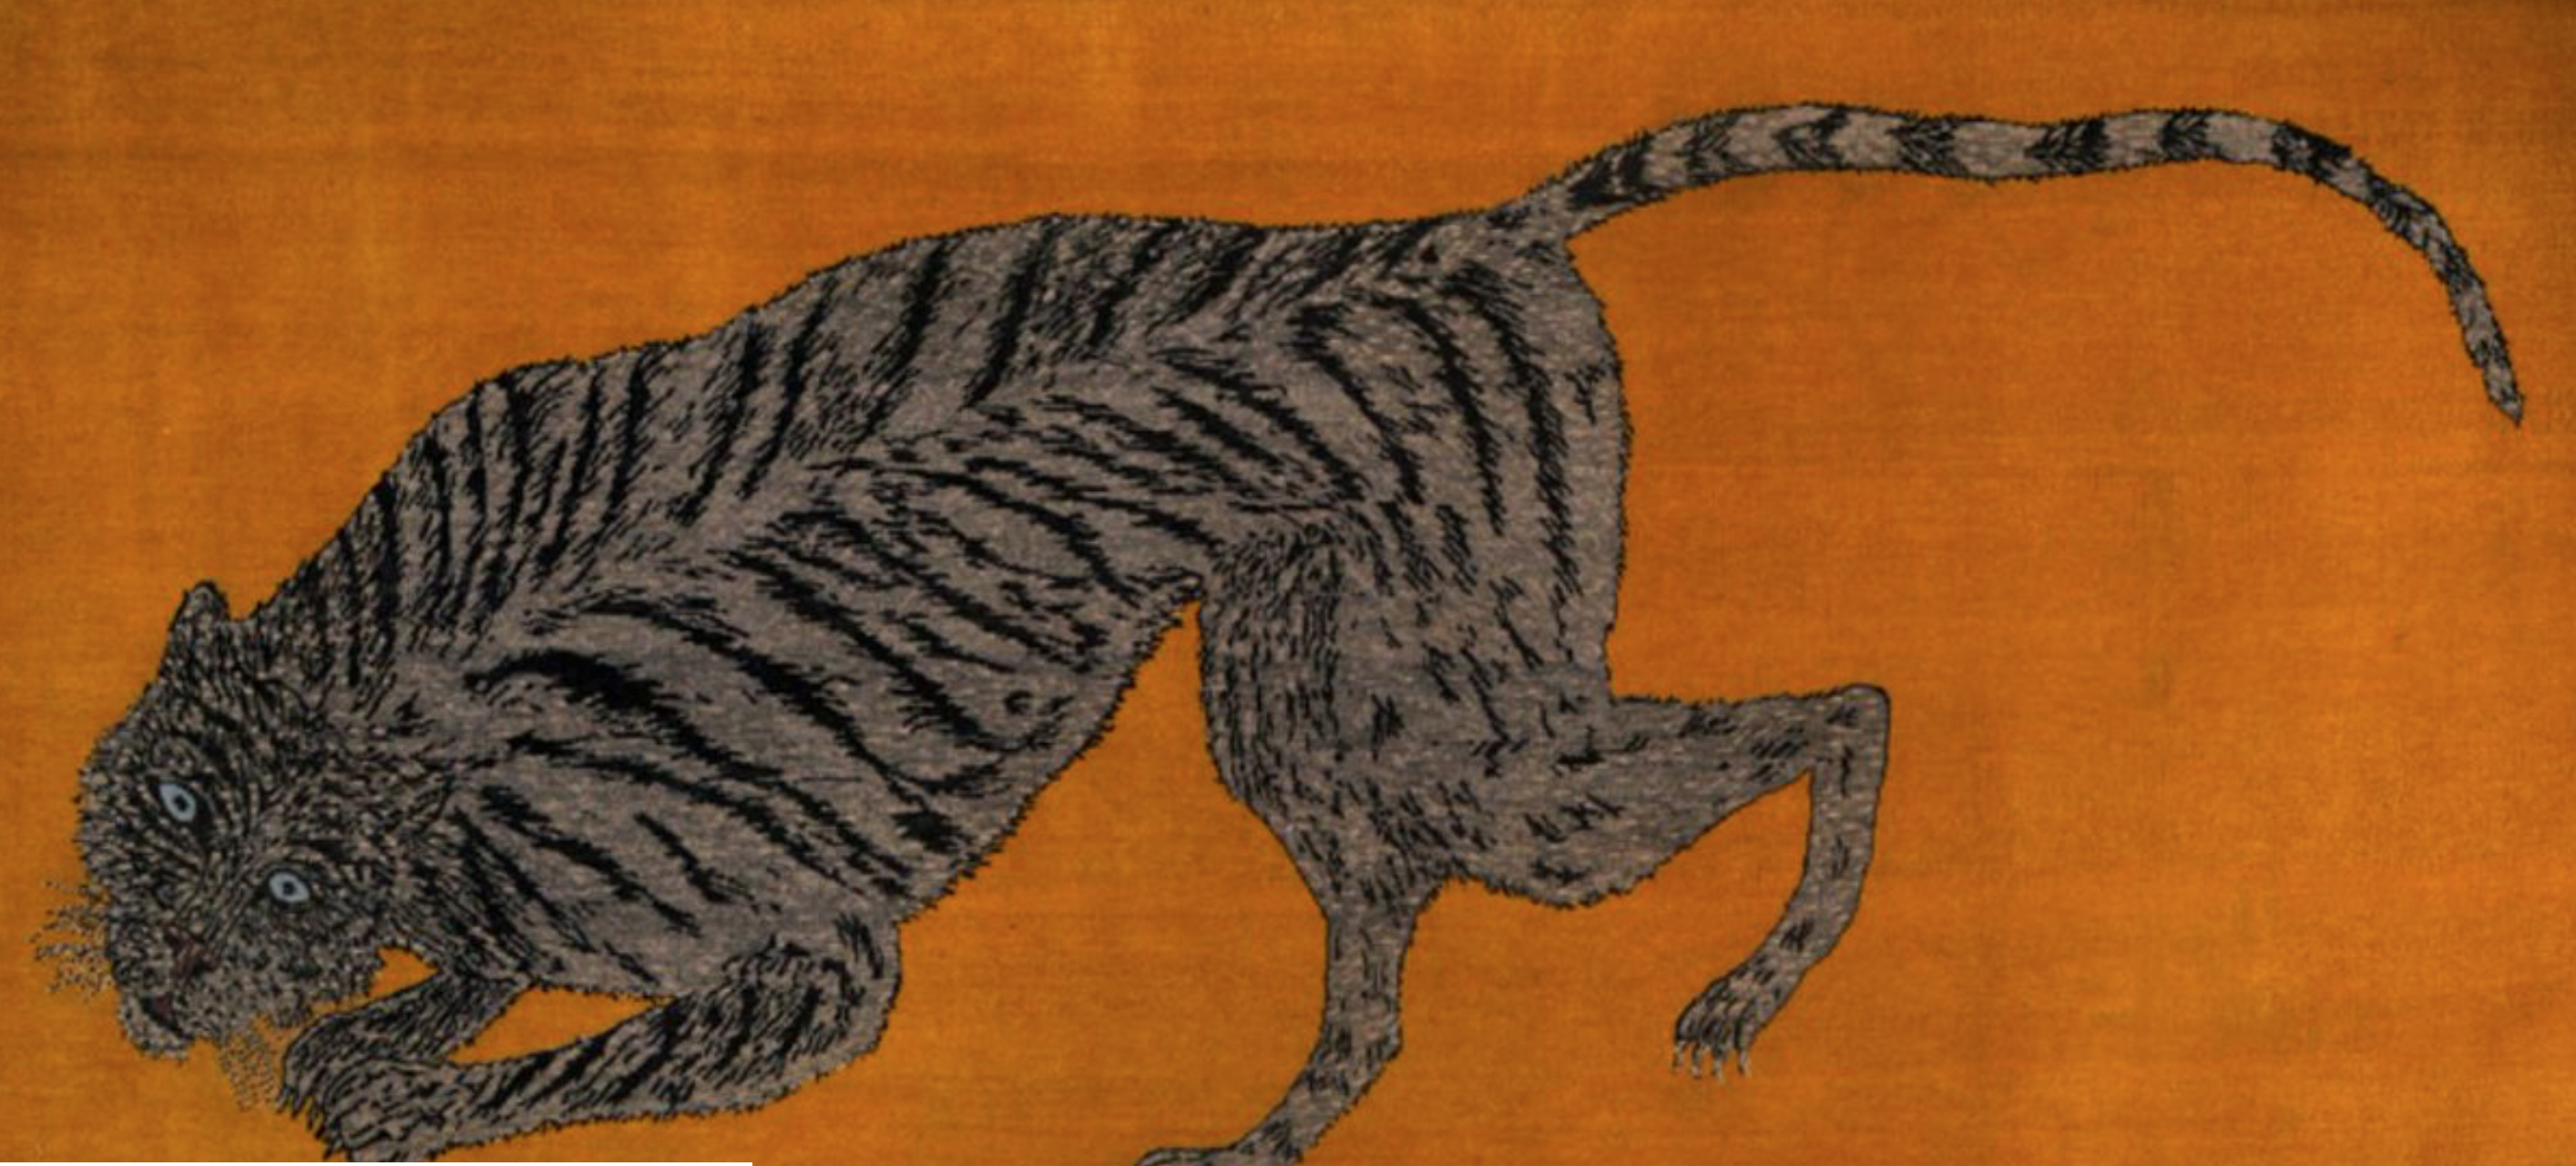 Художники создали ковры для аукциона, чтобы спасти тигров - фото 1